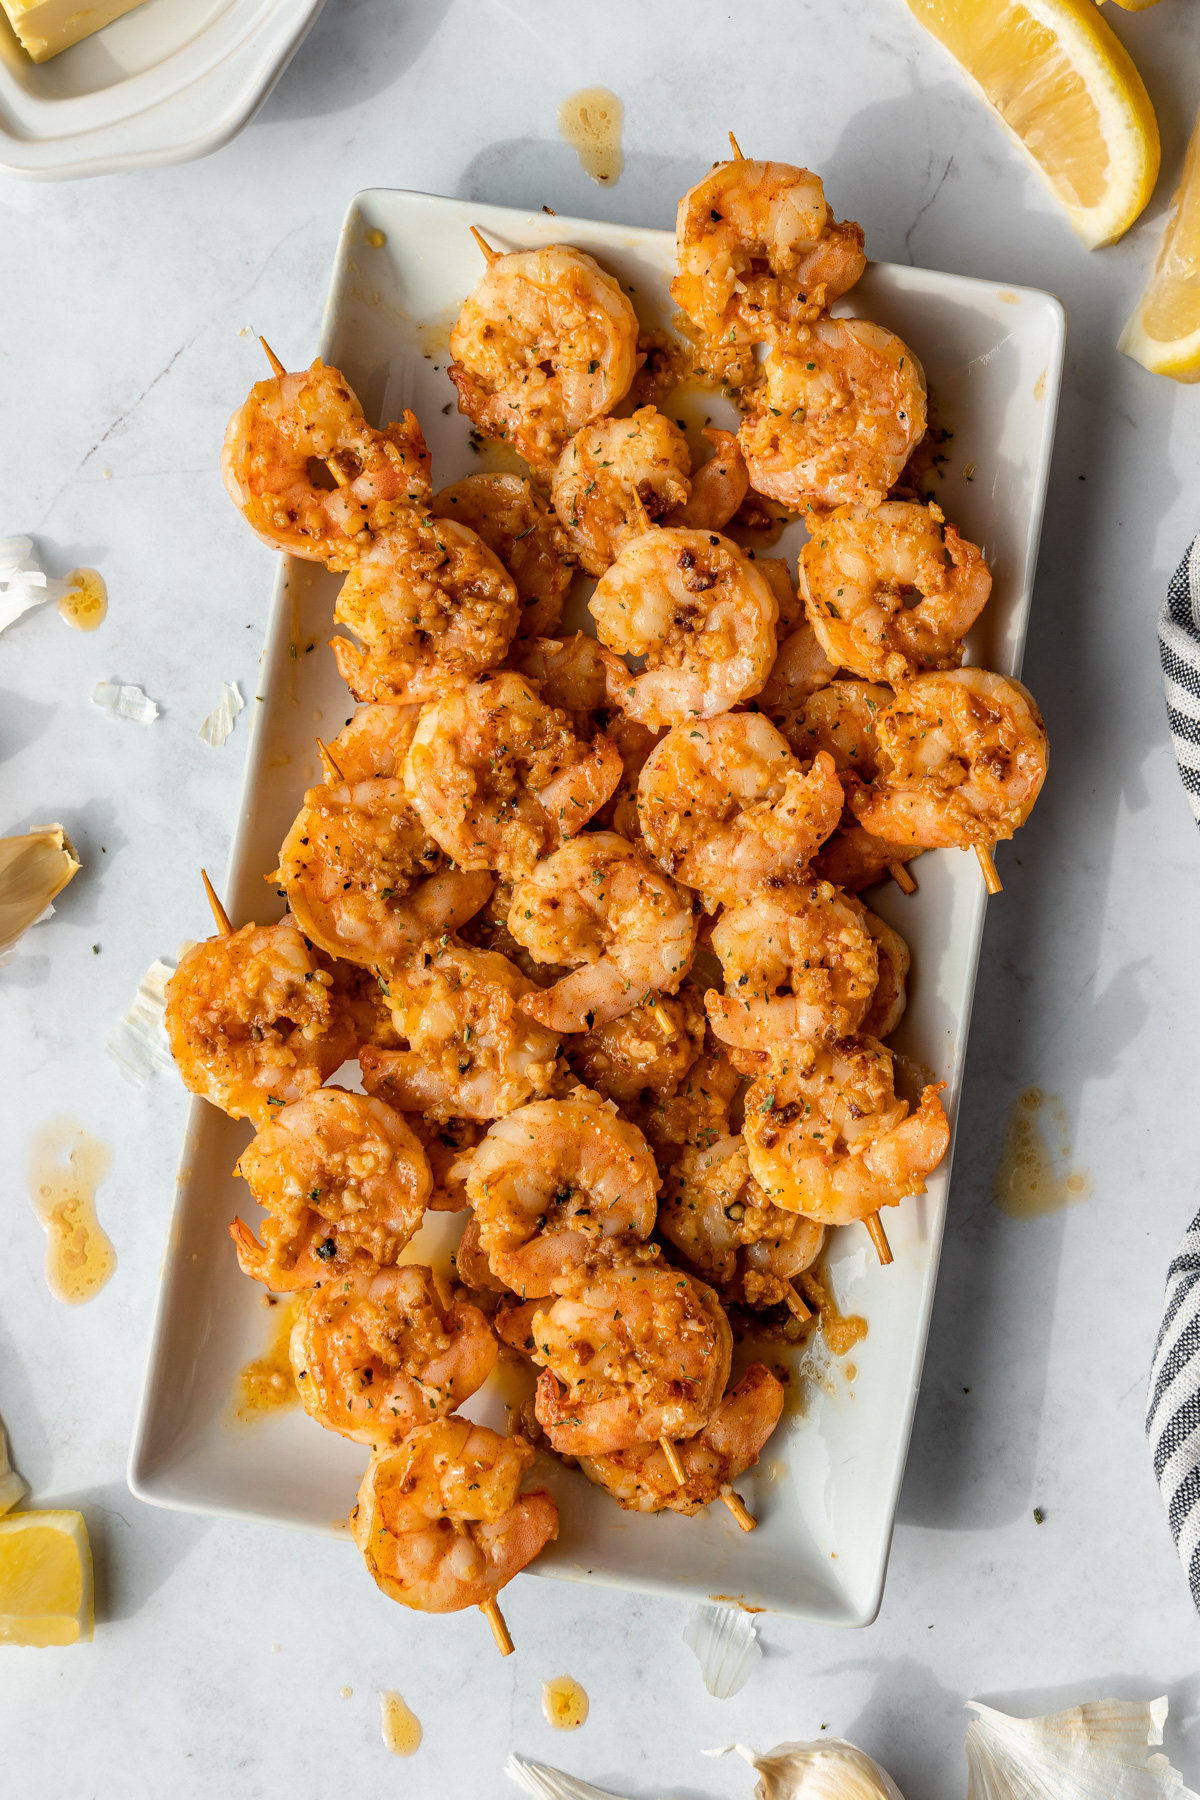 Tropical Theme Party Main Course Ideas - Garlic Butter Shrimp Kabobs